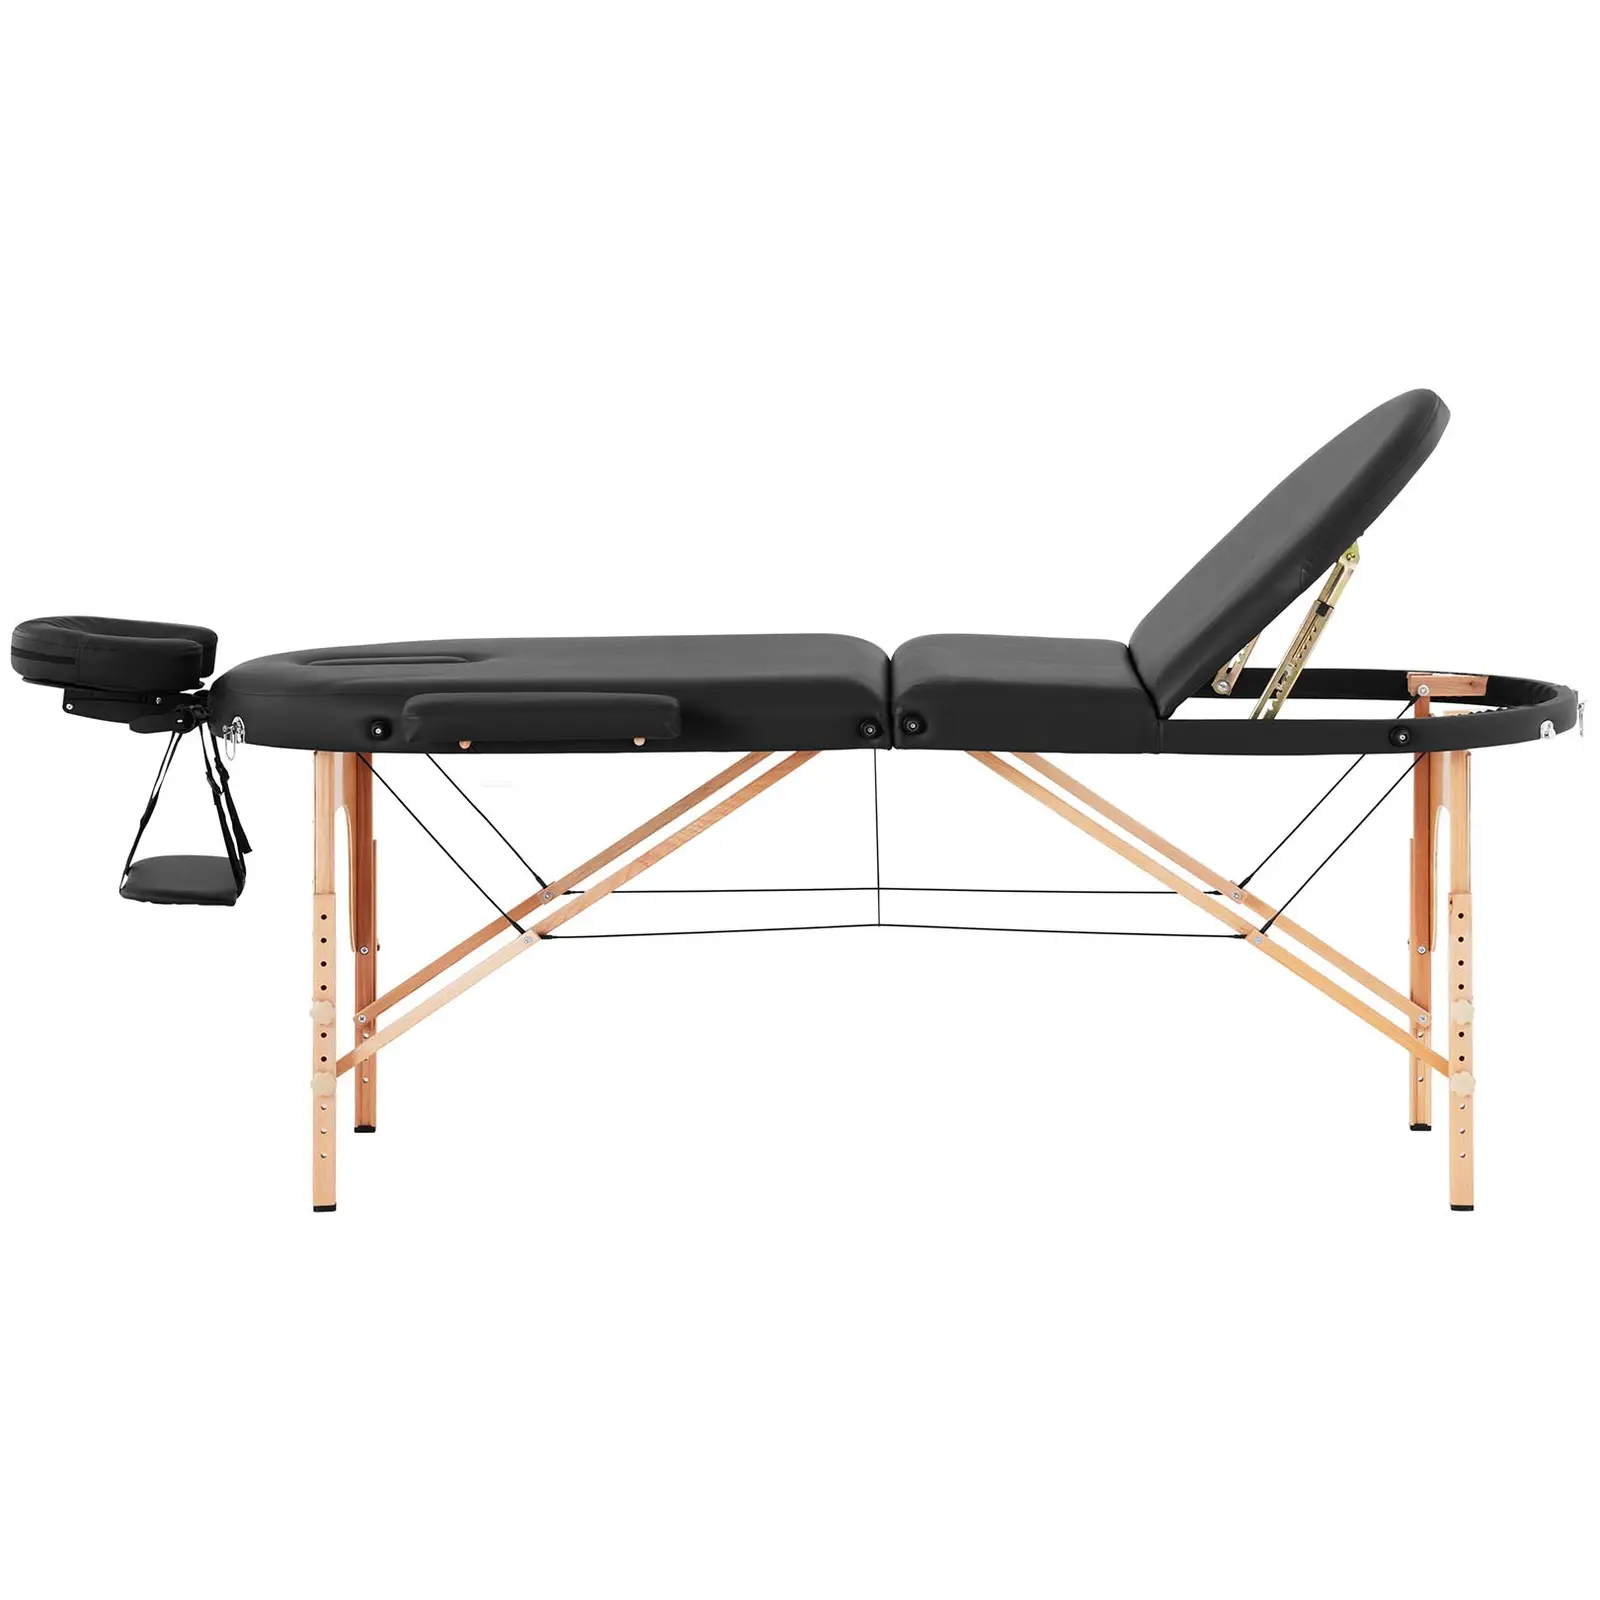 Produtos recondicionados Cama de massagem - 185-211 x 70-88 x 63-85 cm - 227 kg - Preto